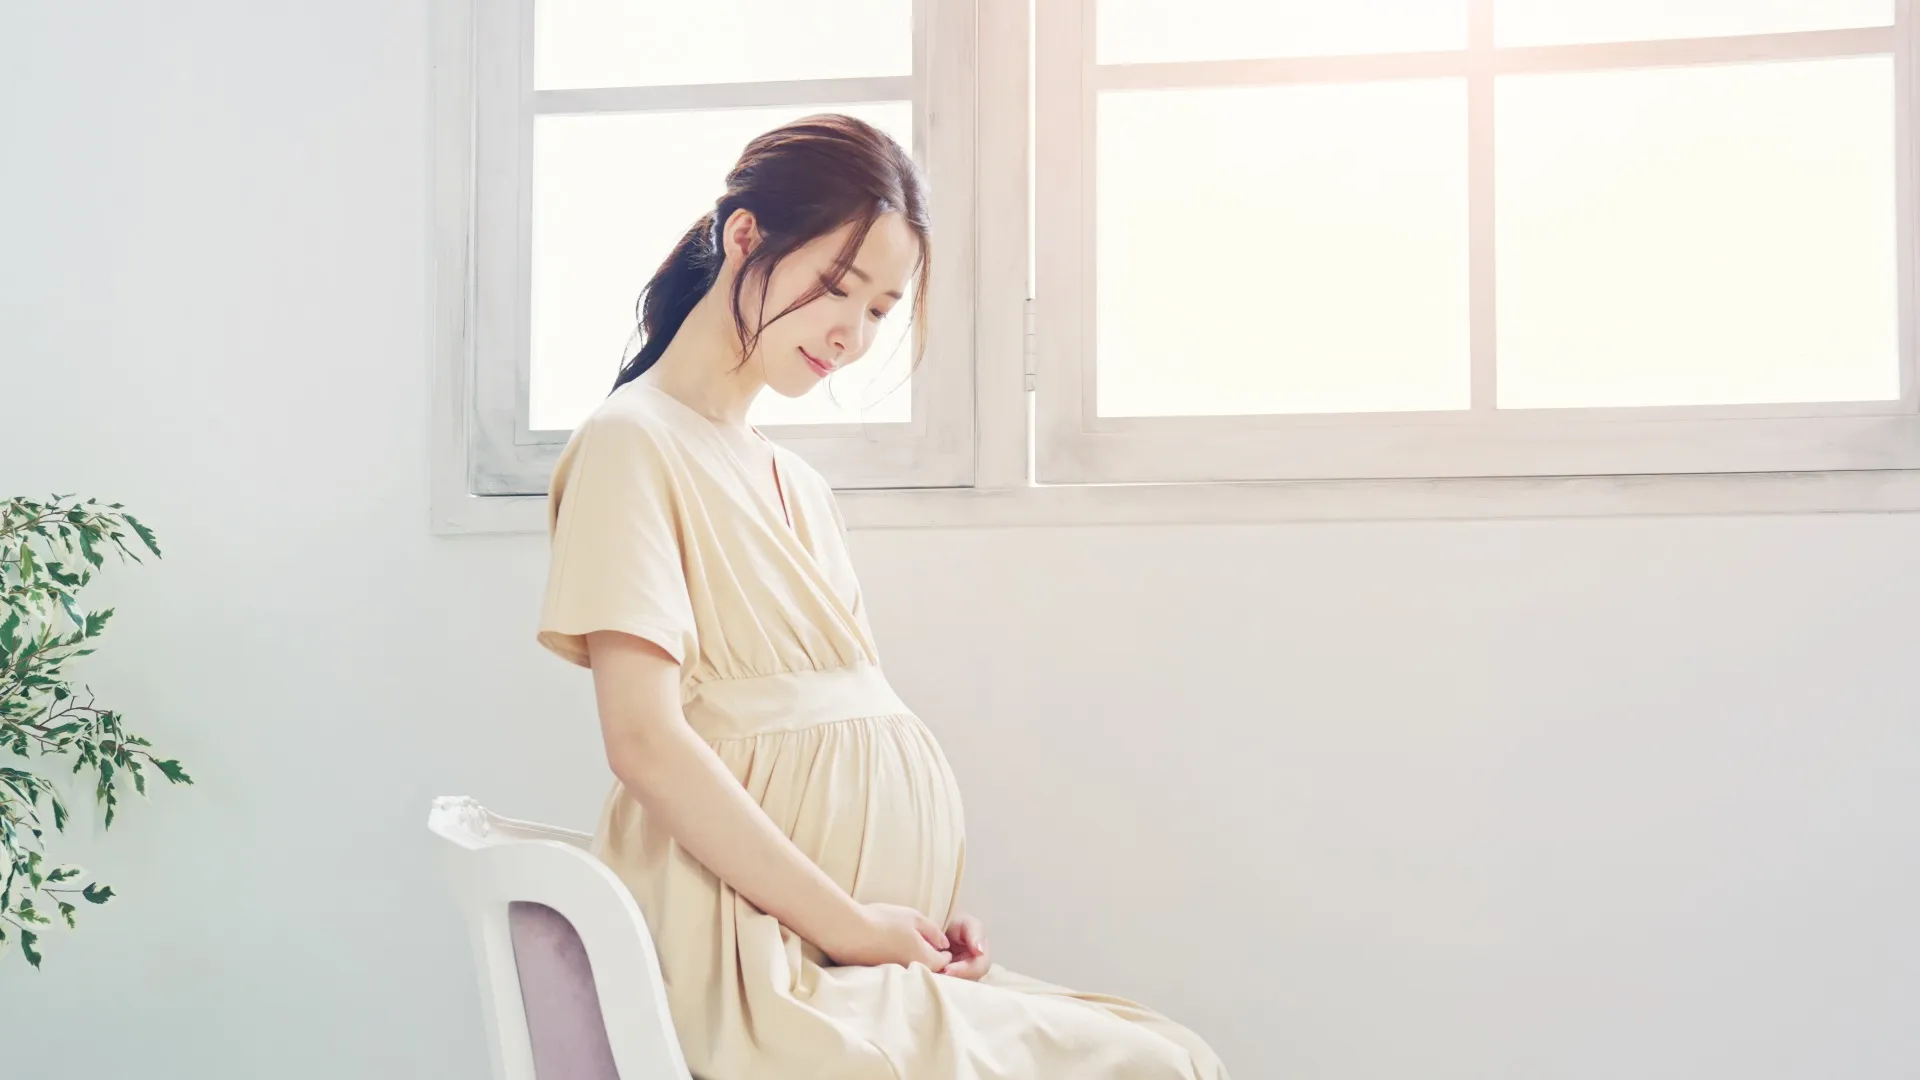 Q6. 妊婦なのですが、施術はできますか？